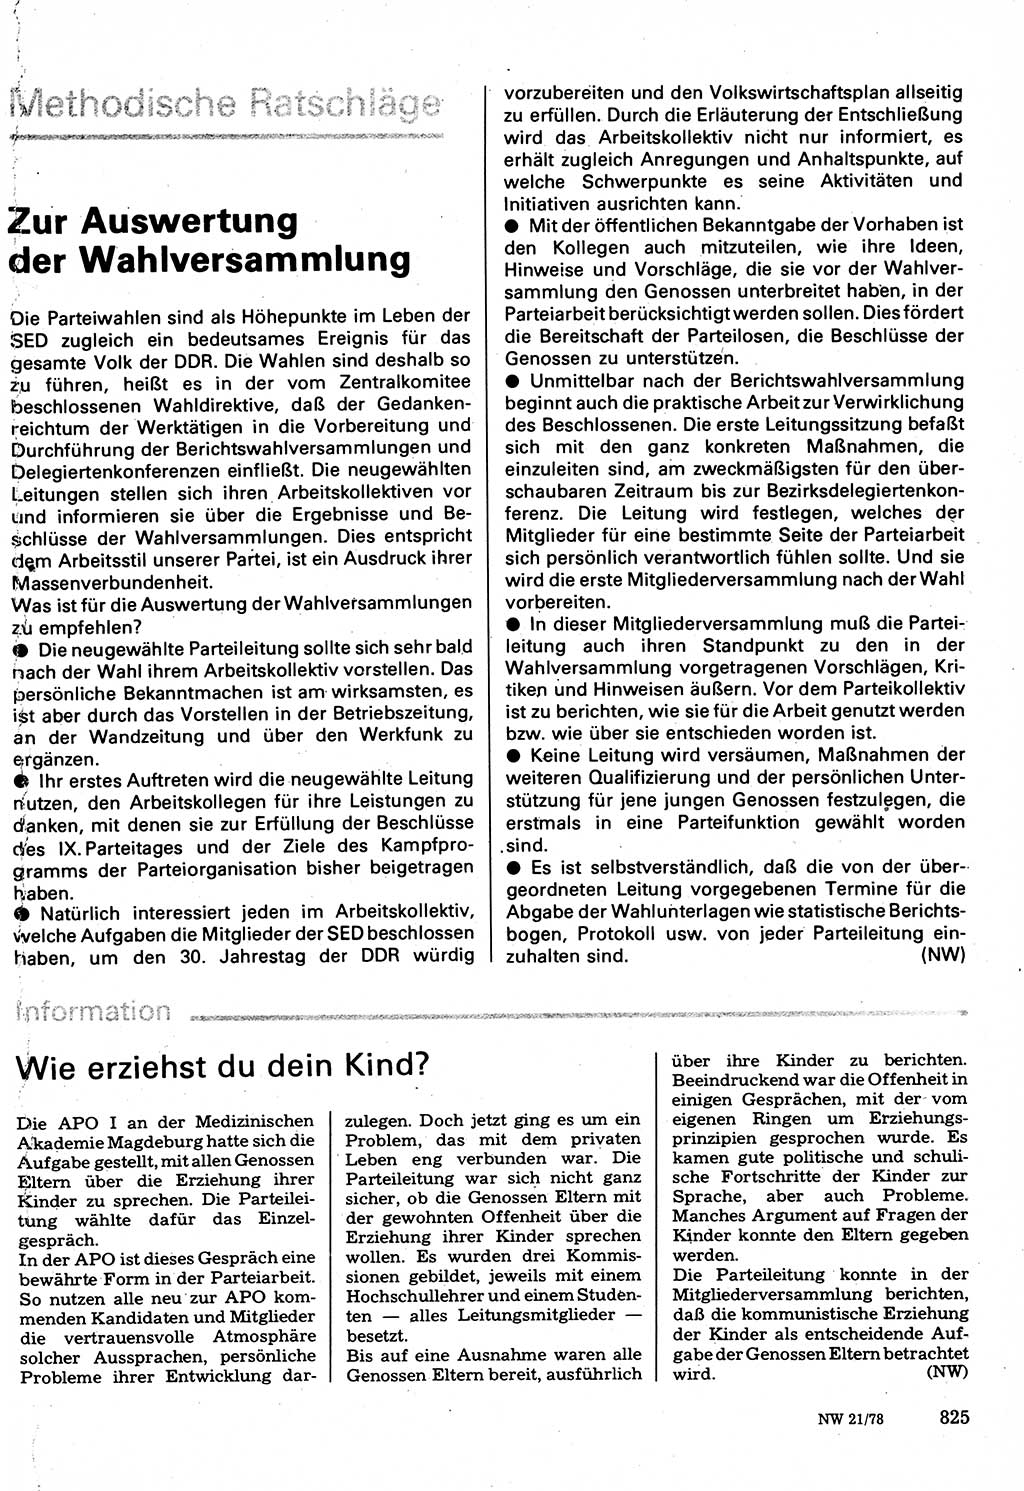 Neuer Weg (NW), Organ des Zentralkomitees (ZK) der SED (Sozialistische Einheitspartei Deutschlands) für Fragen des Parteilebens, 33. Jahrgang [Deutsche Demokratische Republik (DDR)] 1978, Seite 825 (NW ZK SED DDR 1978, S. 825)